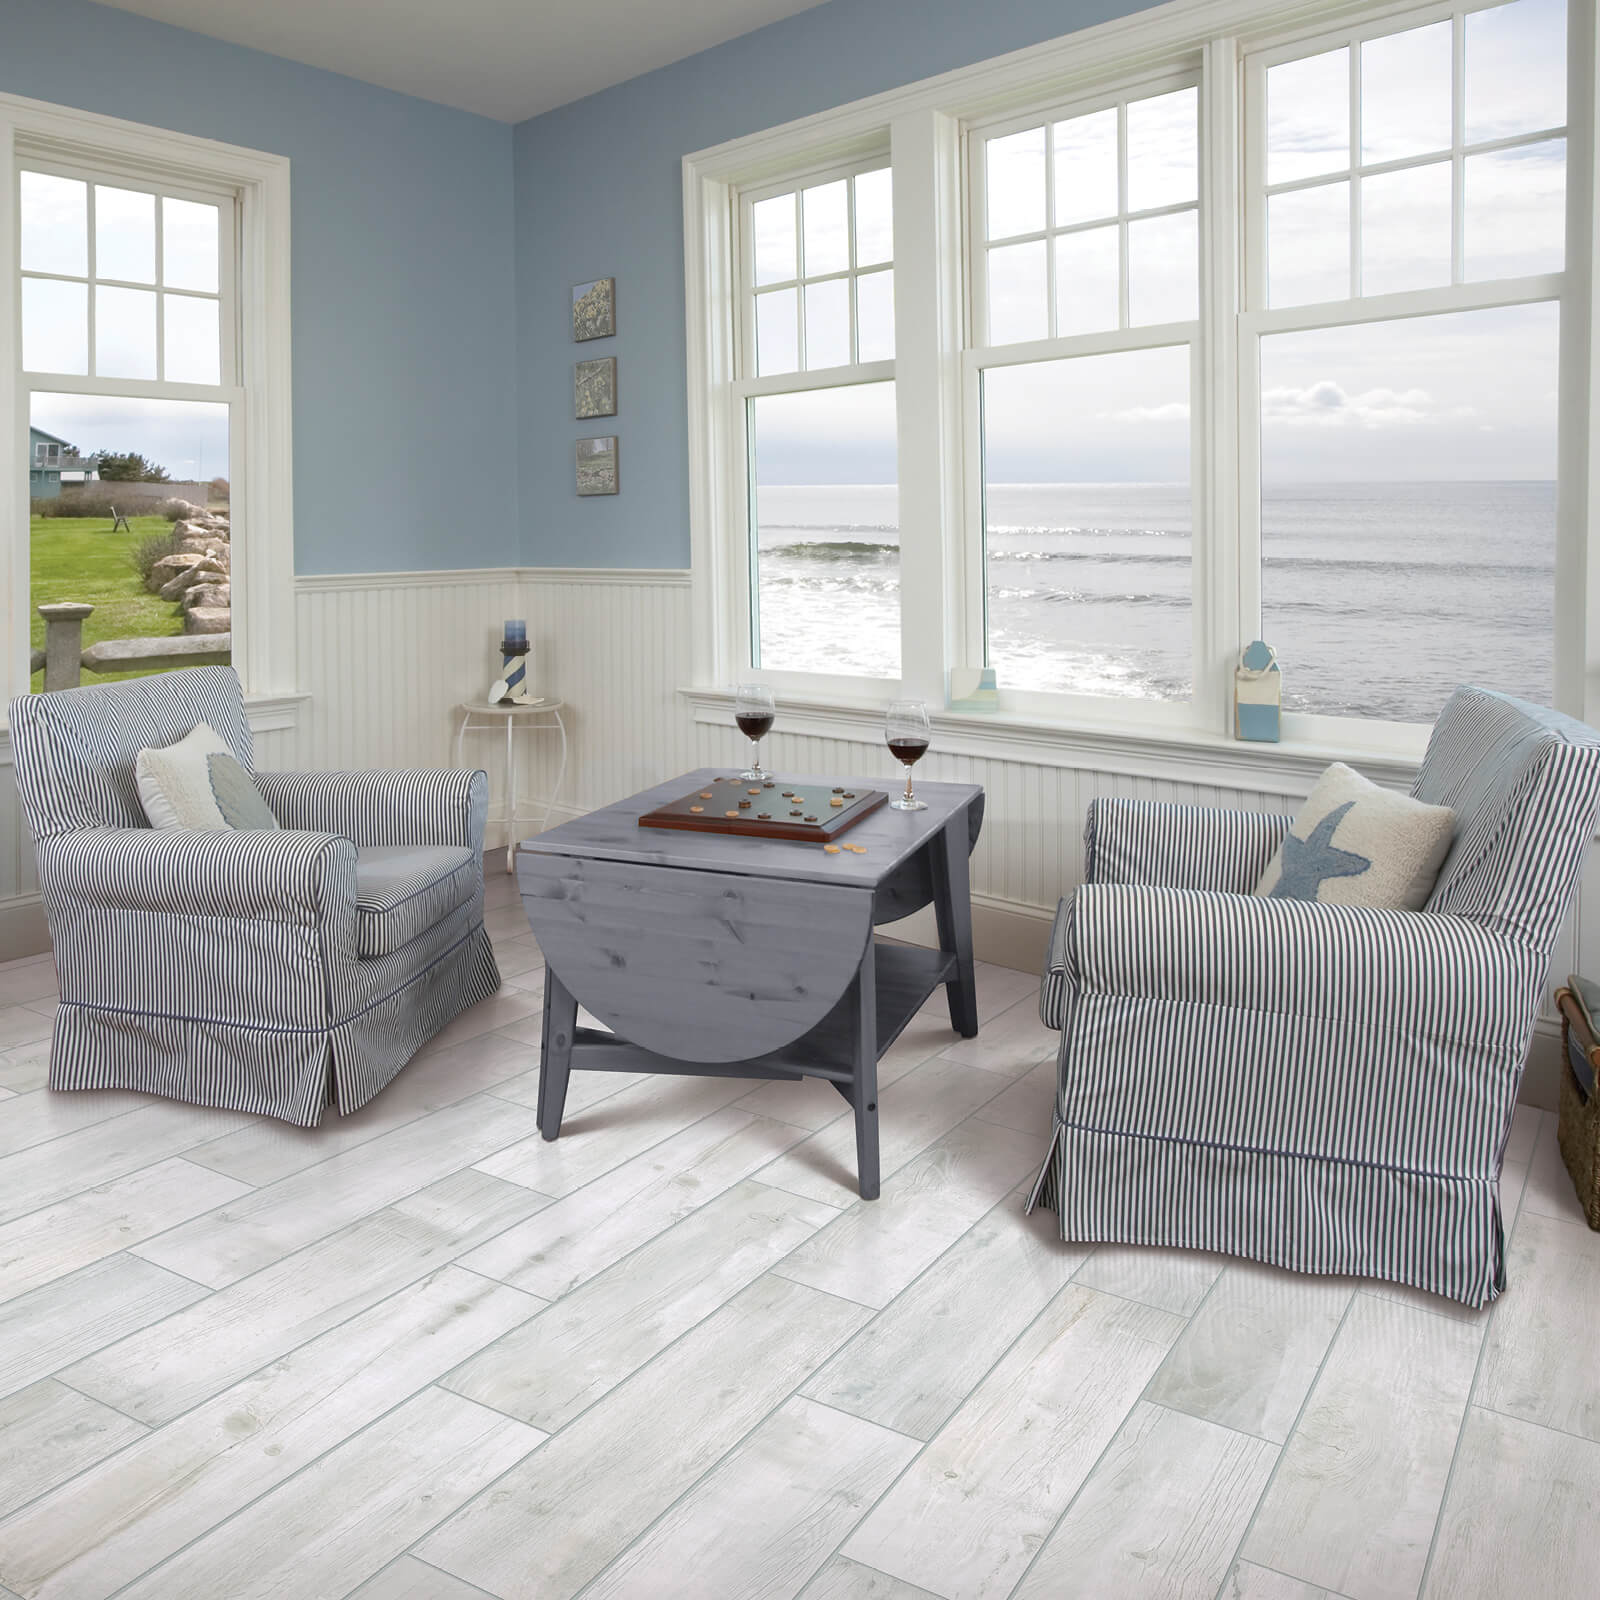 Tile & Seaview from window | Bixby Knolls Carpet